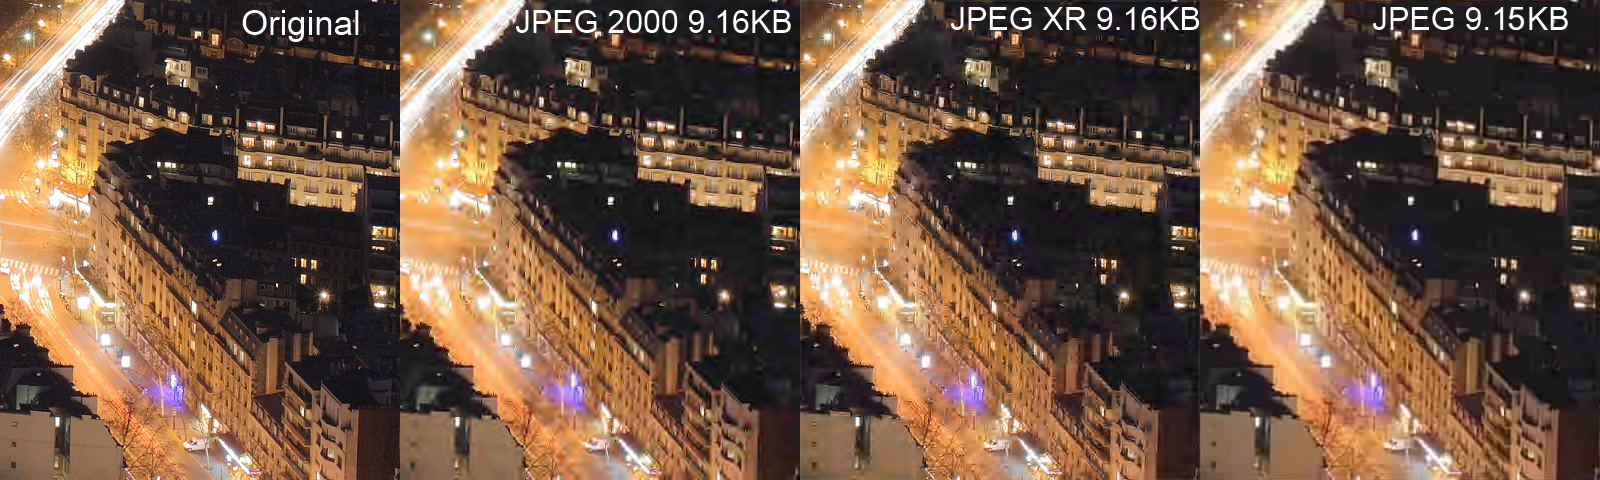 Image result for compression pixels comparison